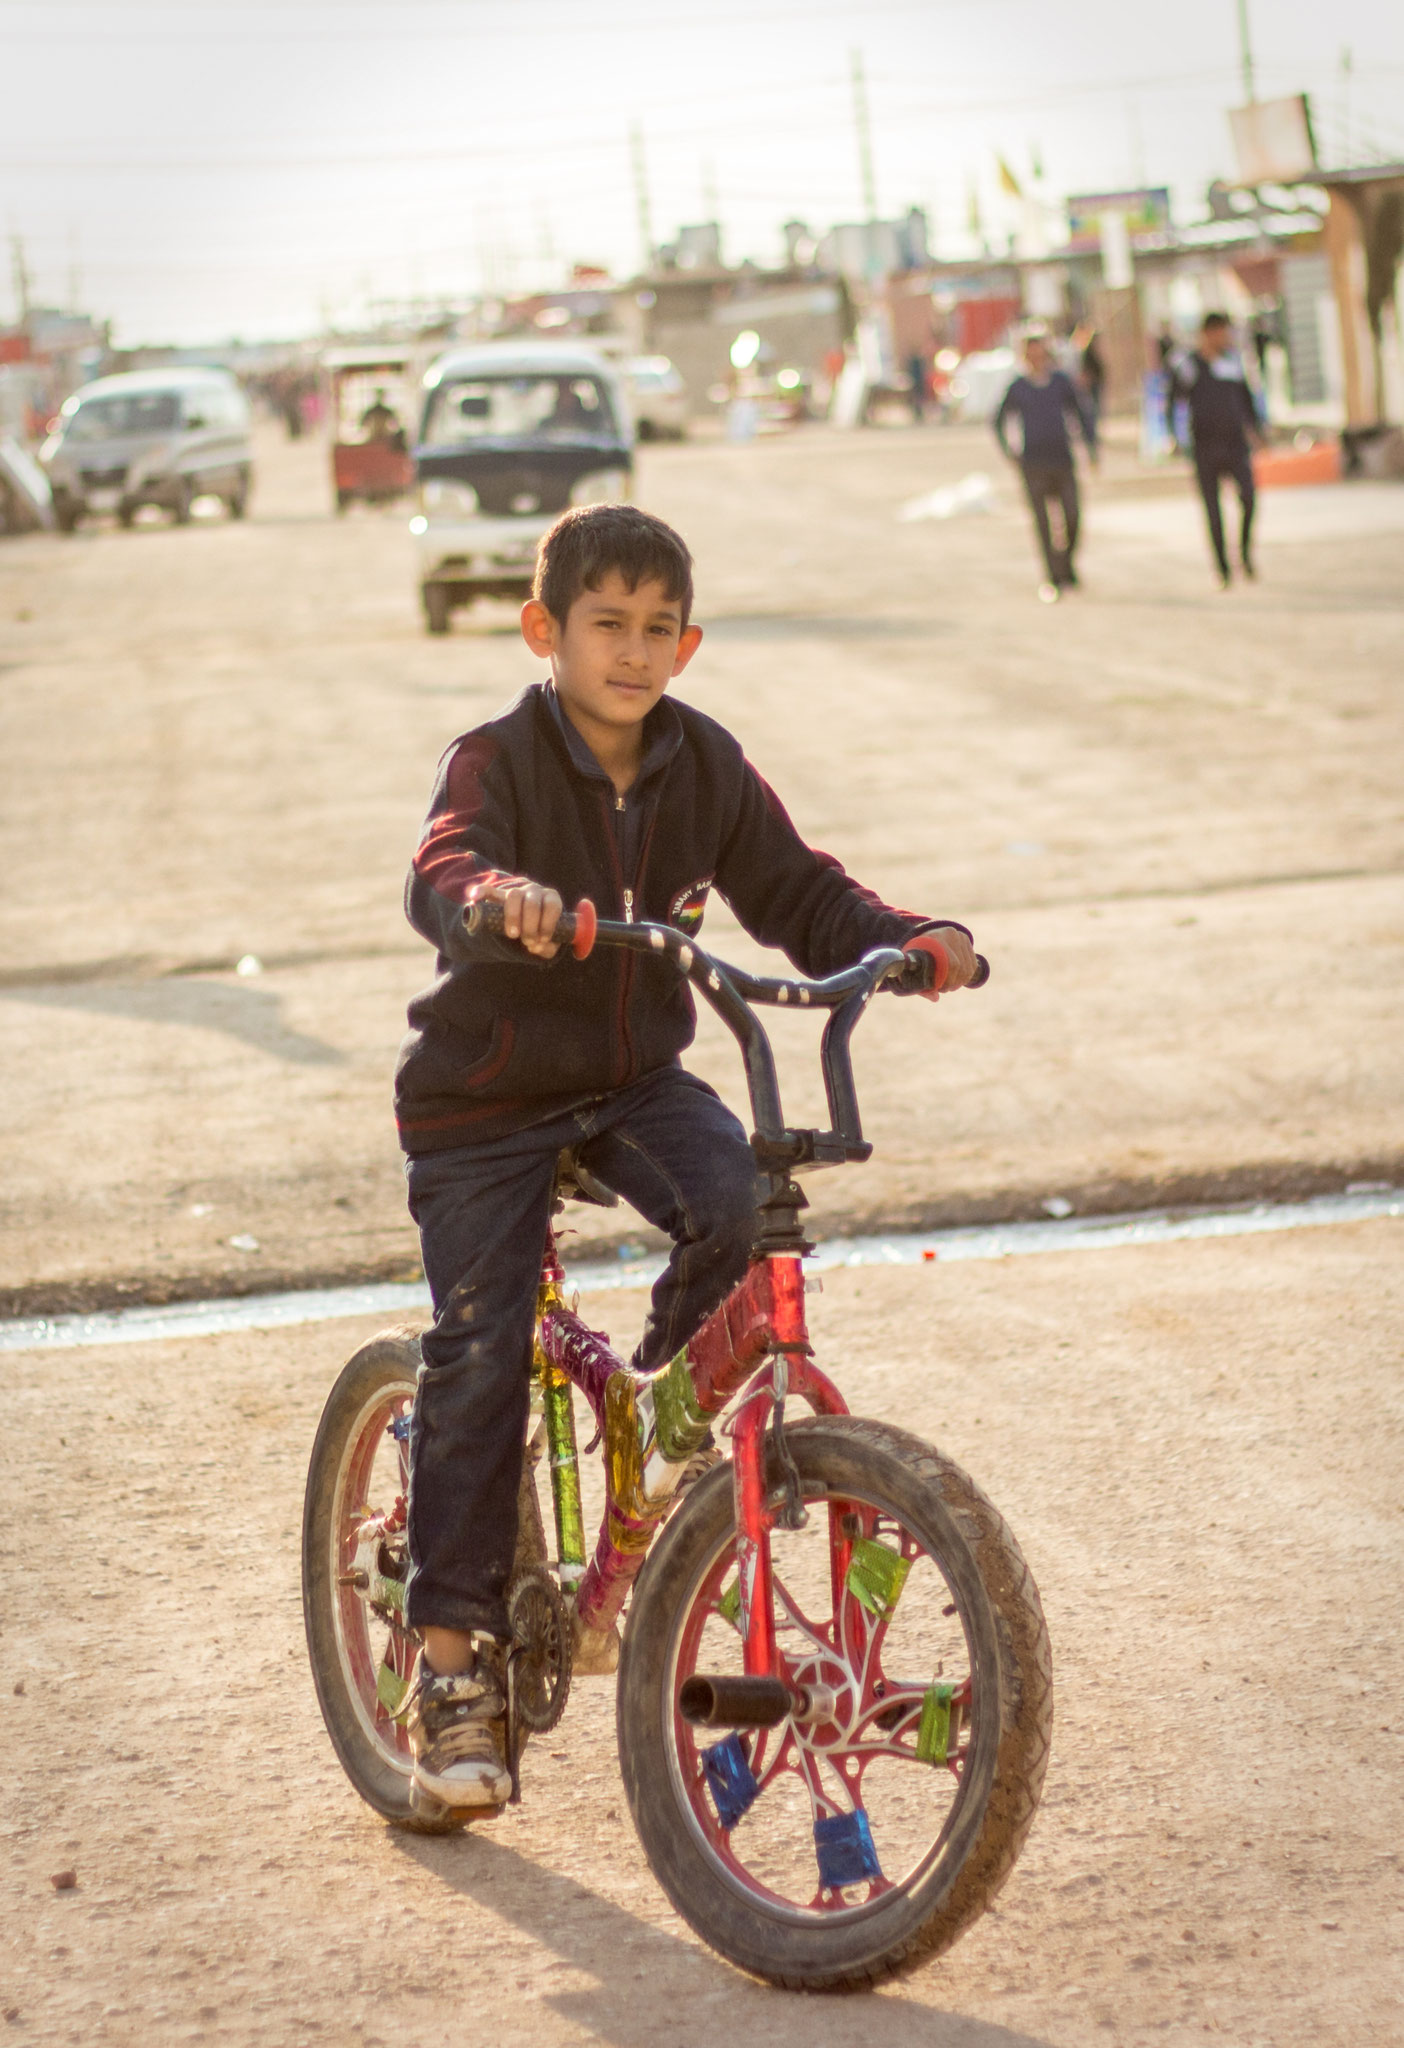 Syrian boy riding his bike in Domiz refugee camp in Kurdistan/Iraq. March 2017. 